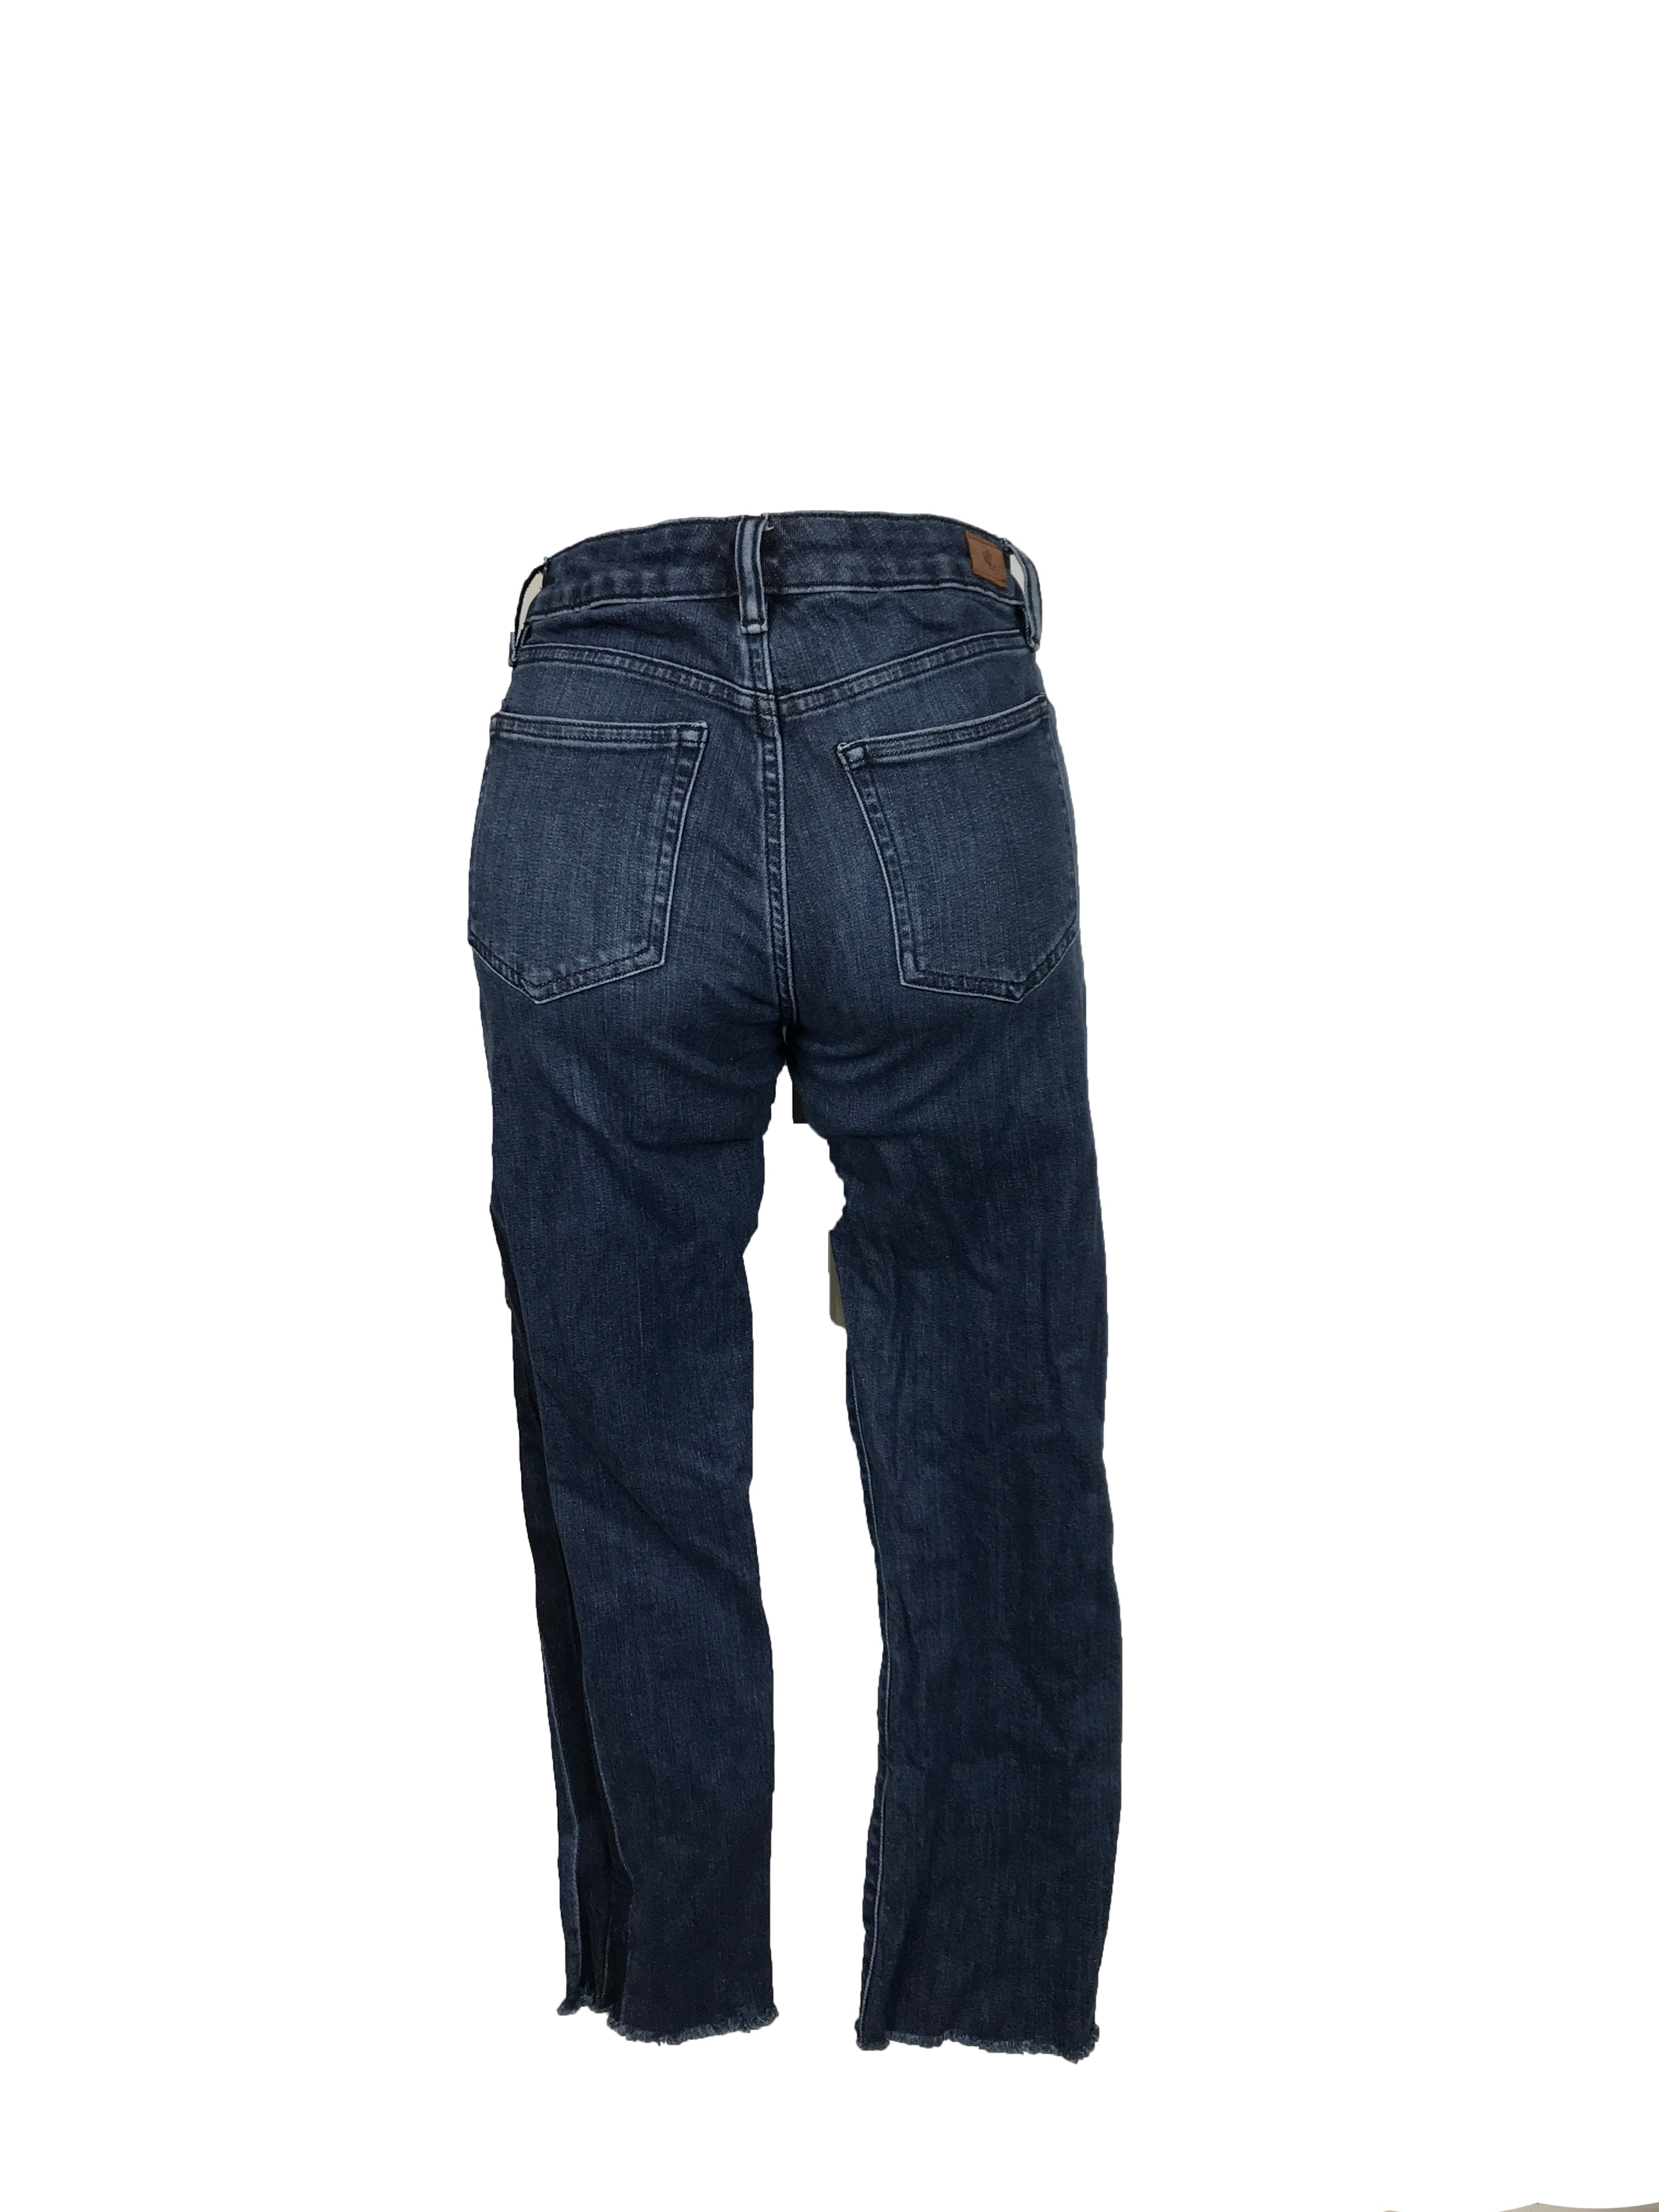 Ralph Lauren Dark Wash Jeans Women's Size 2 – MSU Surplus Store